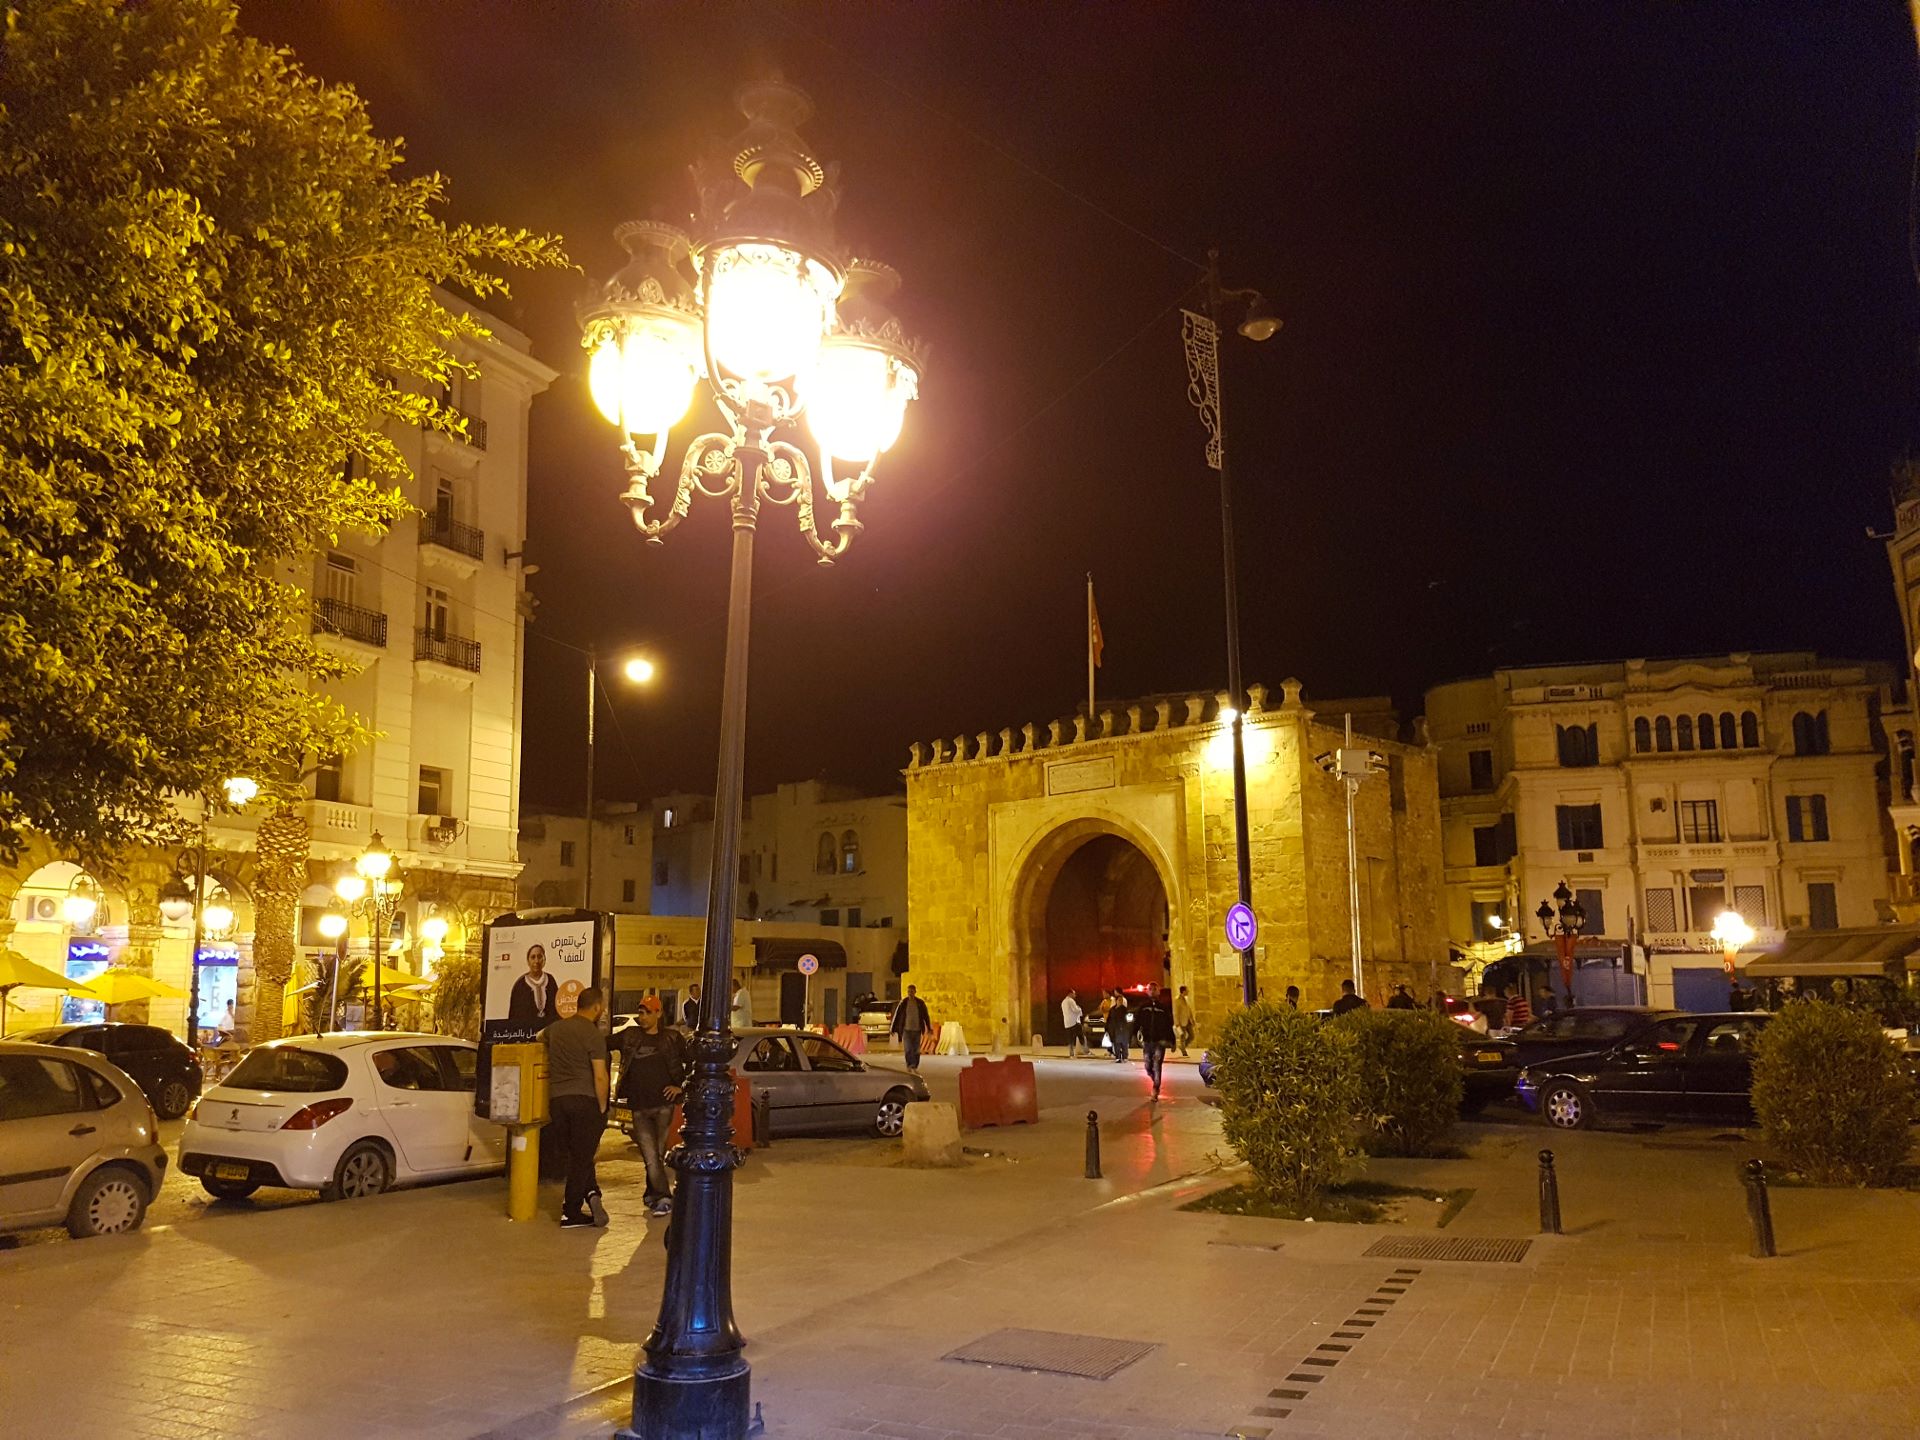 Tunis, Bab el Bhar am Place de la Victoire